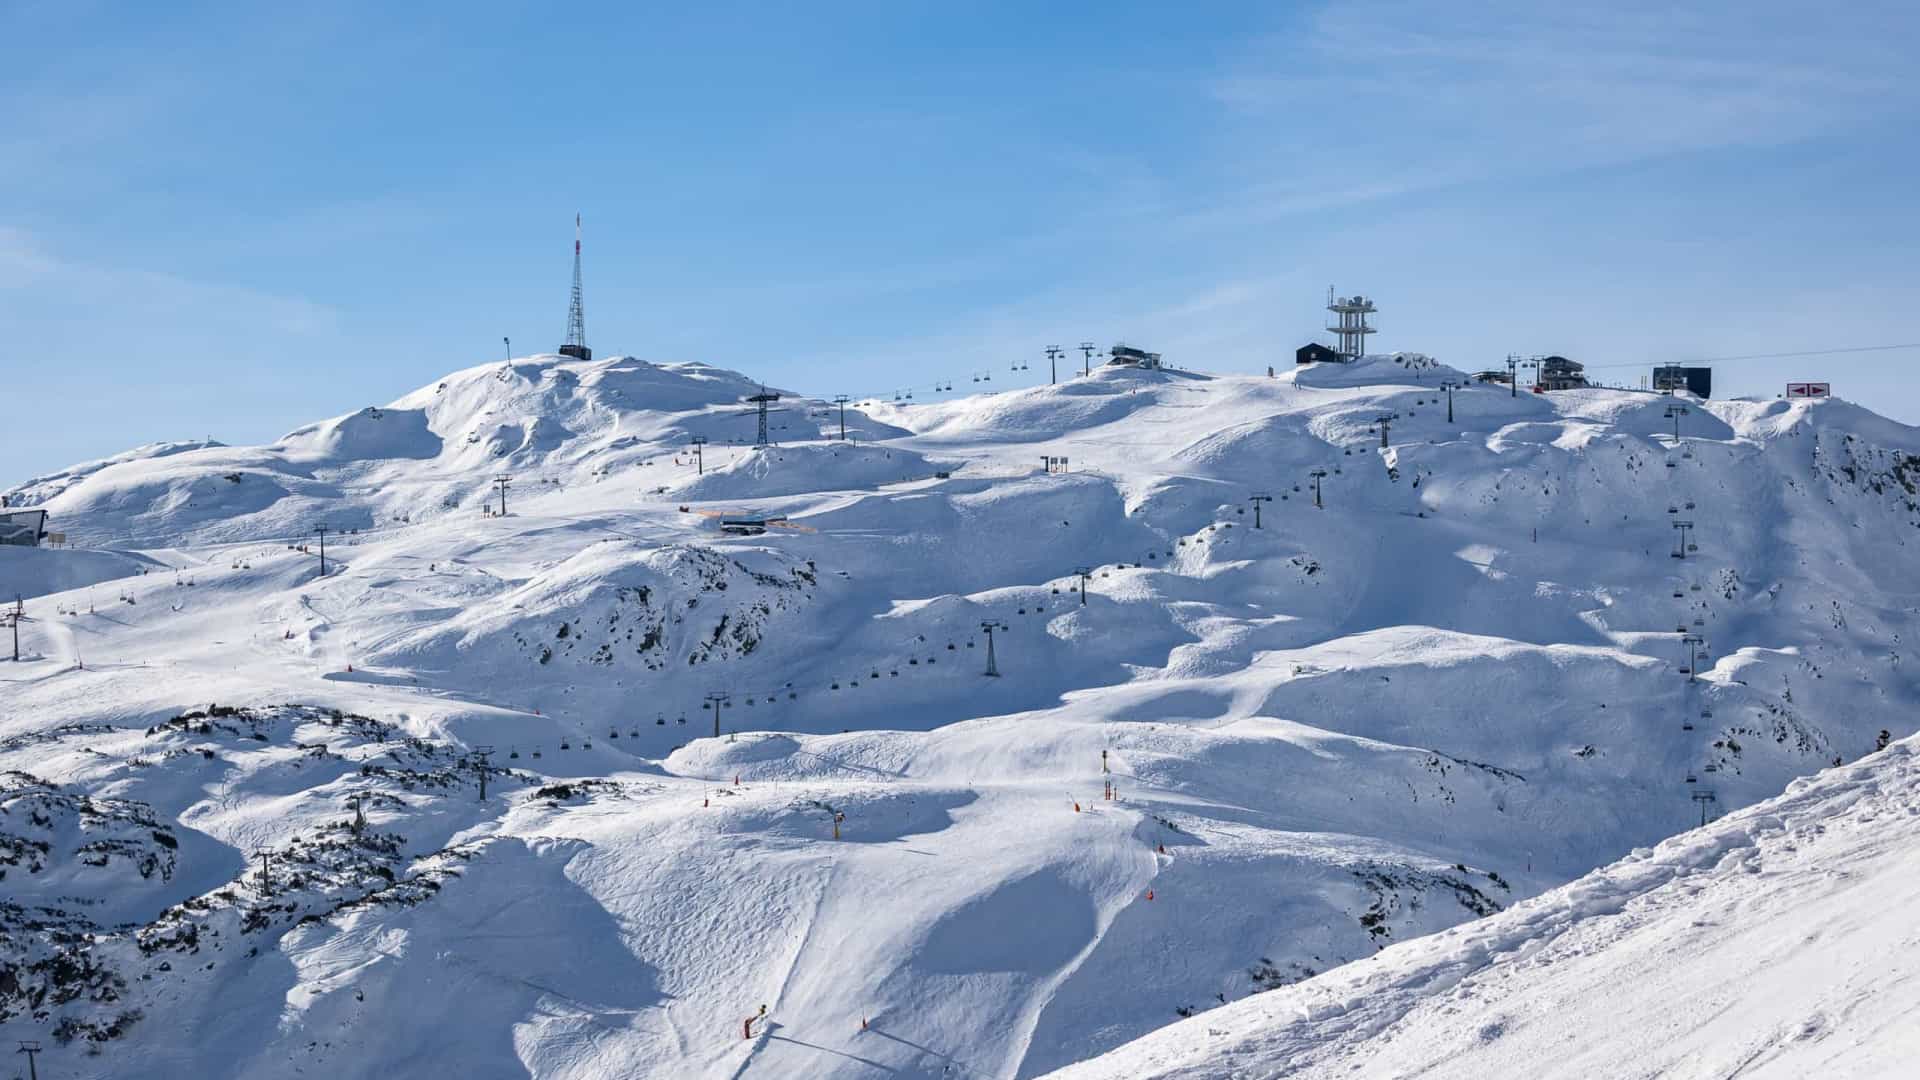 96 turistas encontrados em estância de ski na Áustria a infringir regras